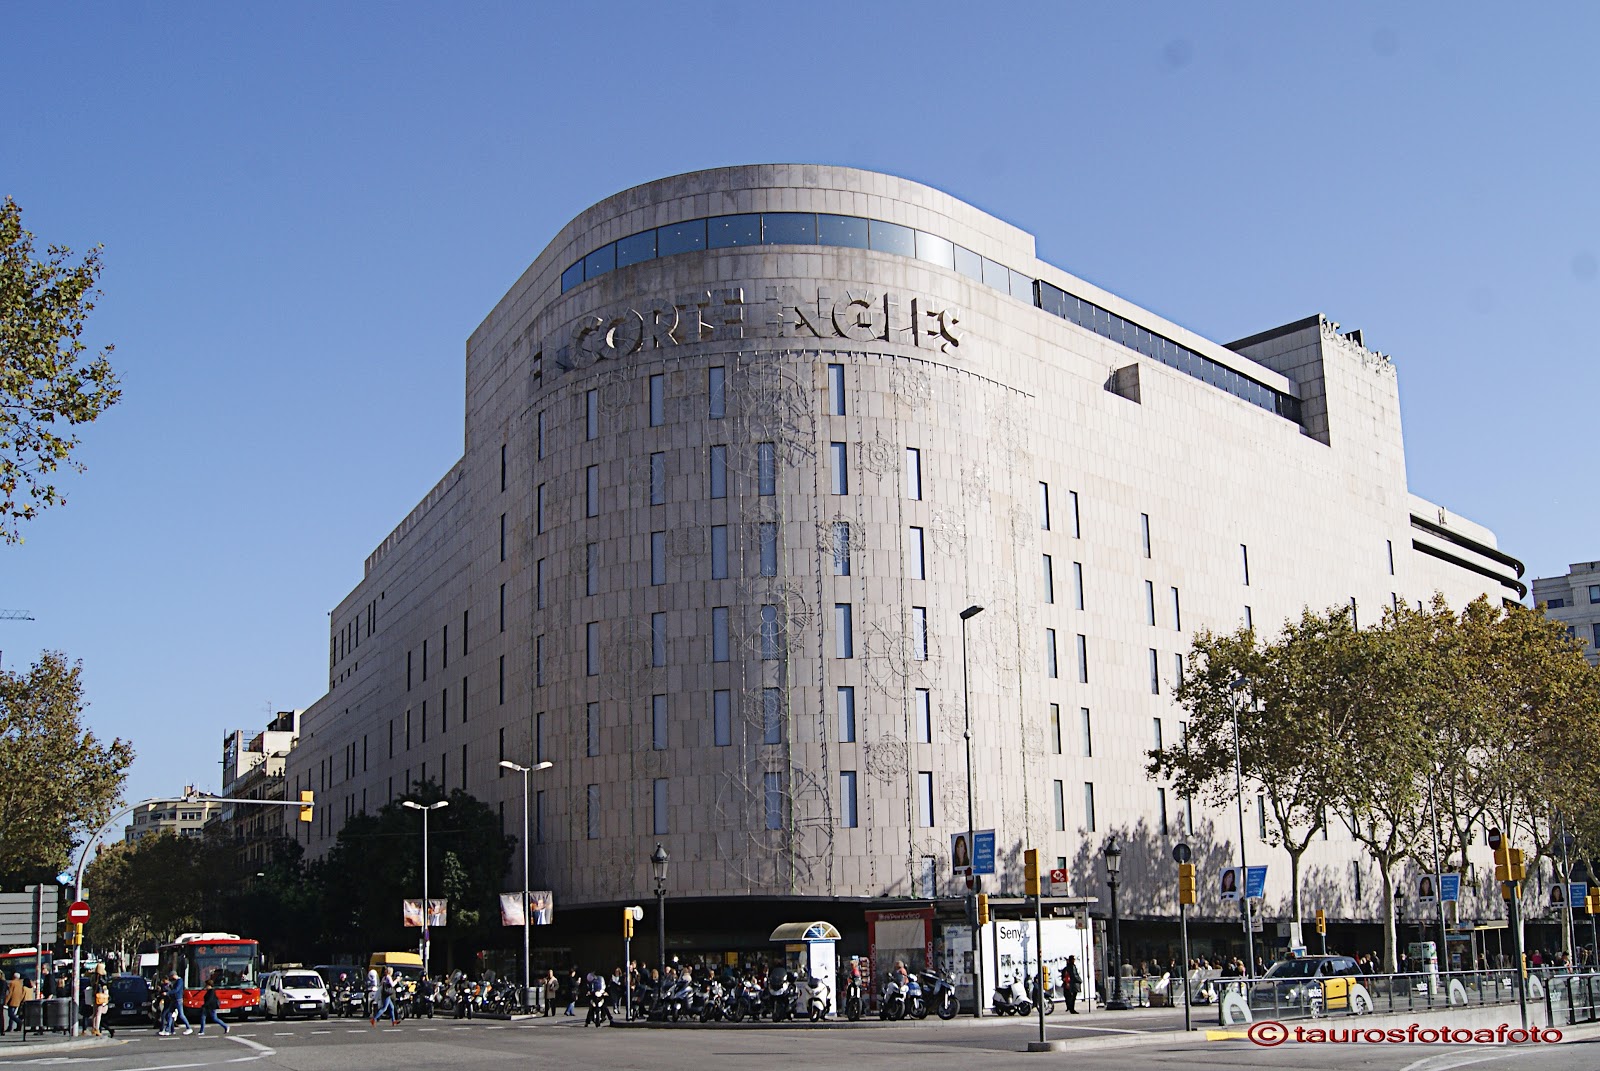 El Corte Ingls en Barcelona - Ofertia